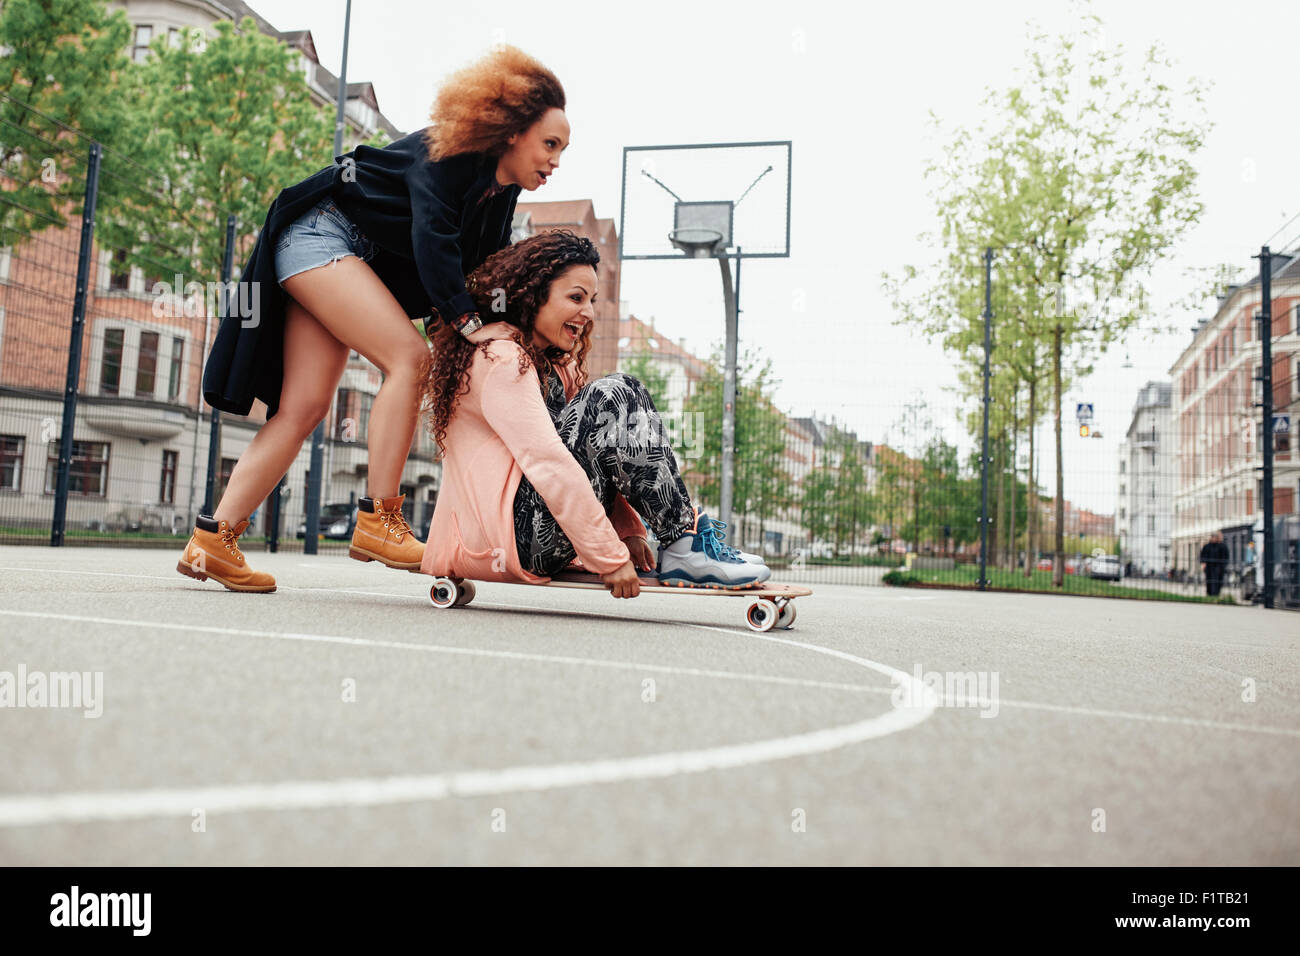 Mujer empujando a su amigo en monopatín. Las mujeres jóvenes la posibilidad de divertirse juntos al aire libre. Foto de stock